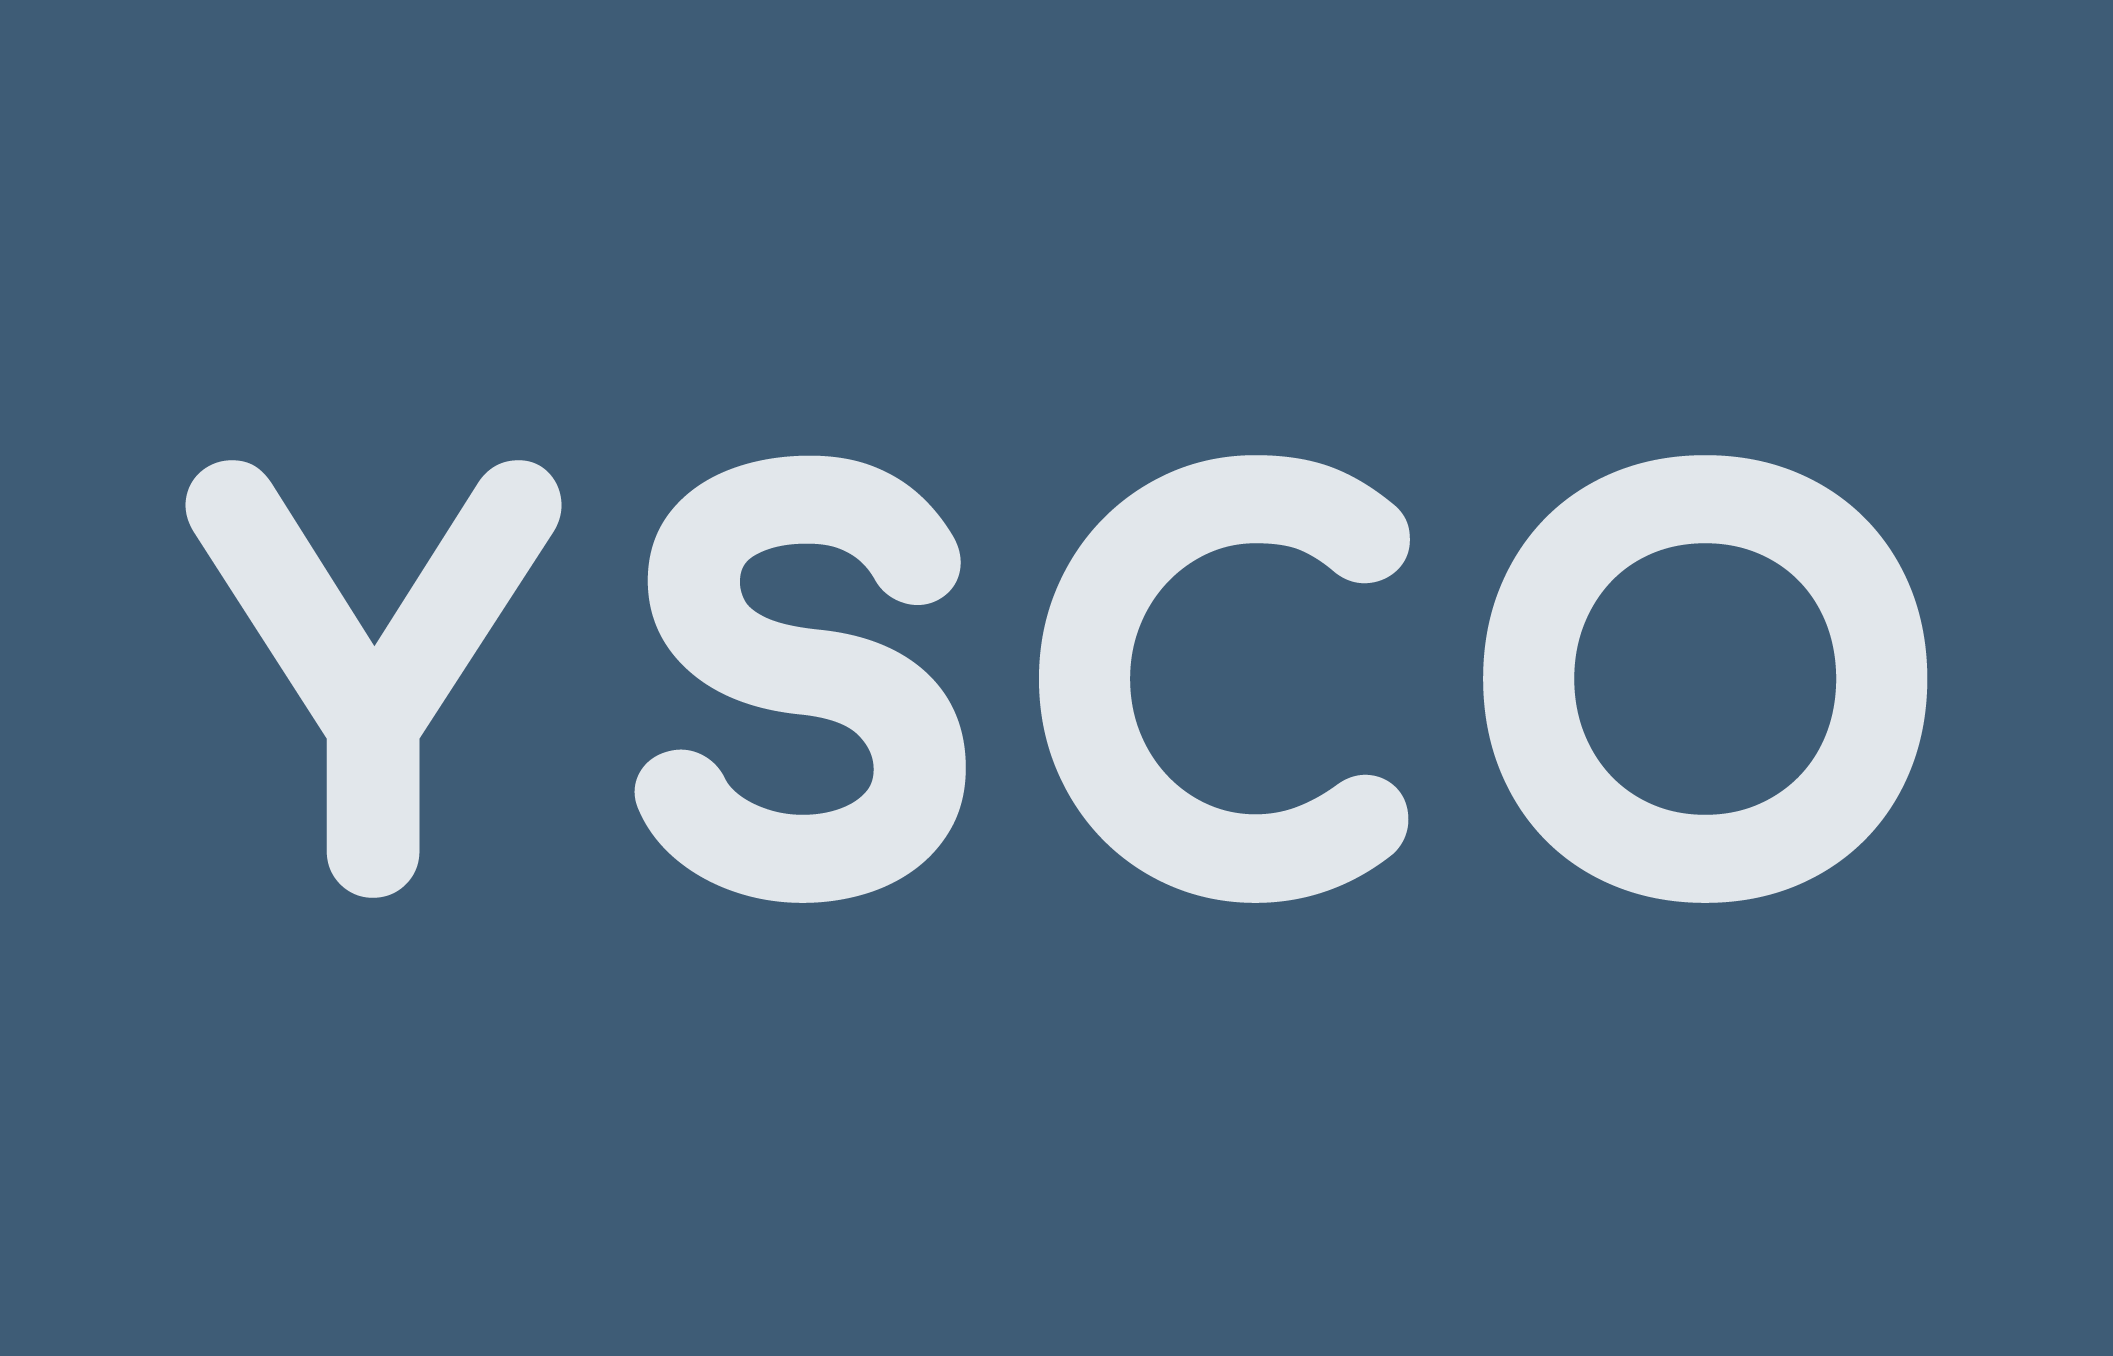 YSCO-back-ground